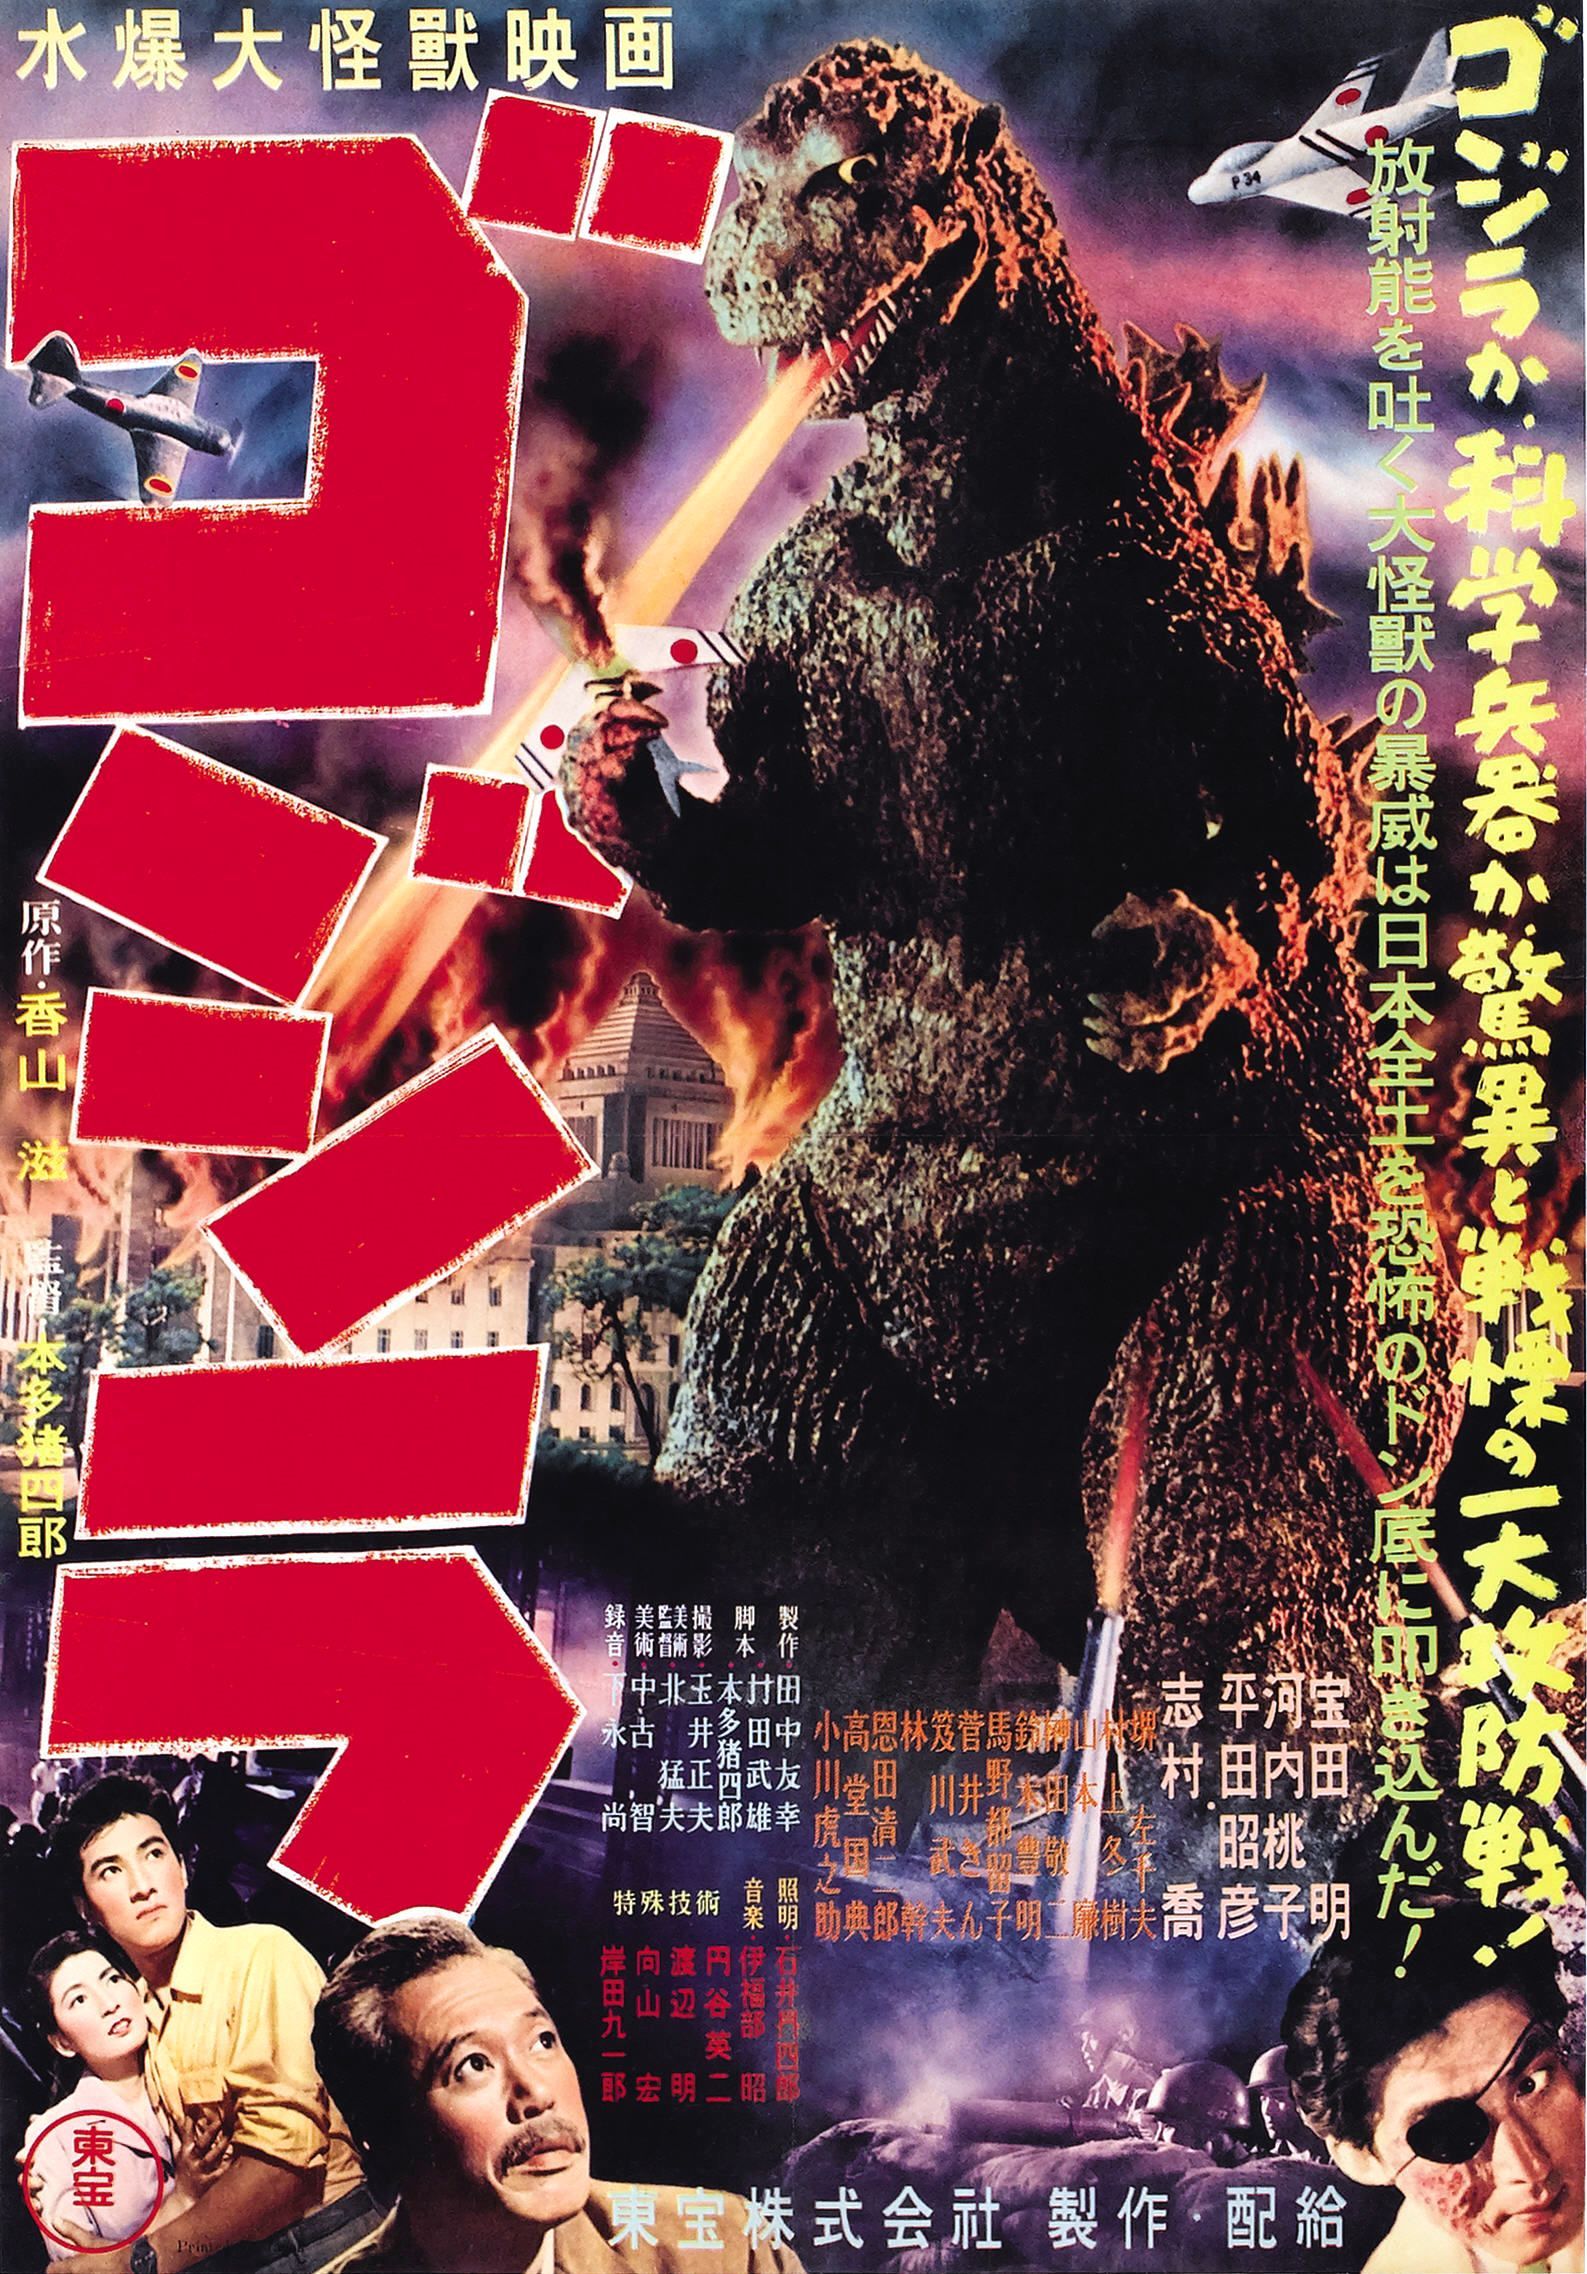 Godzilla 1954 Film Poster-1